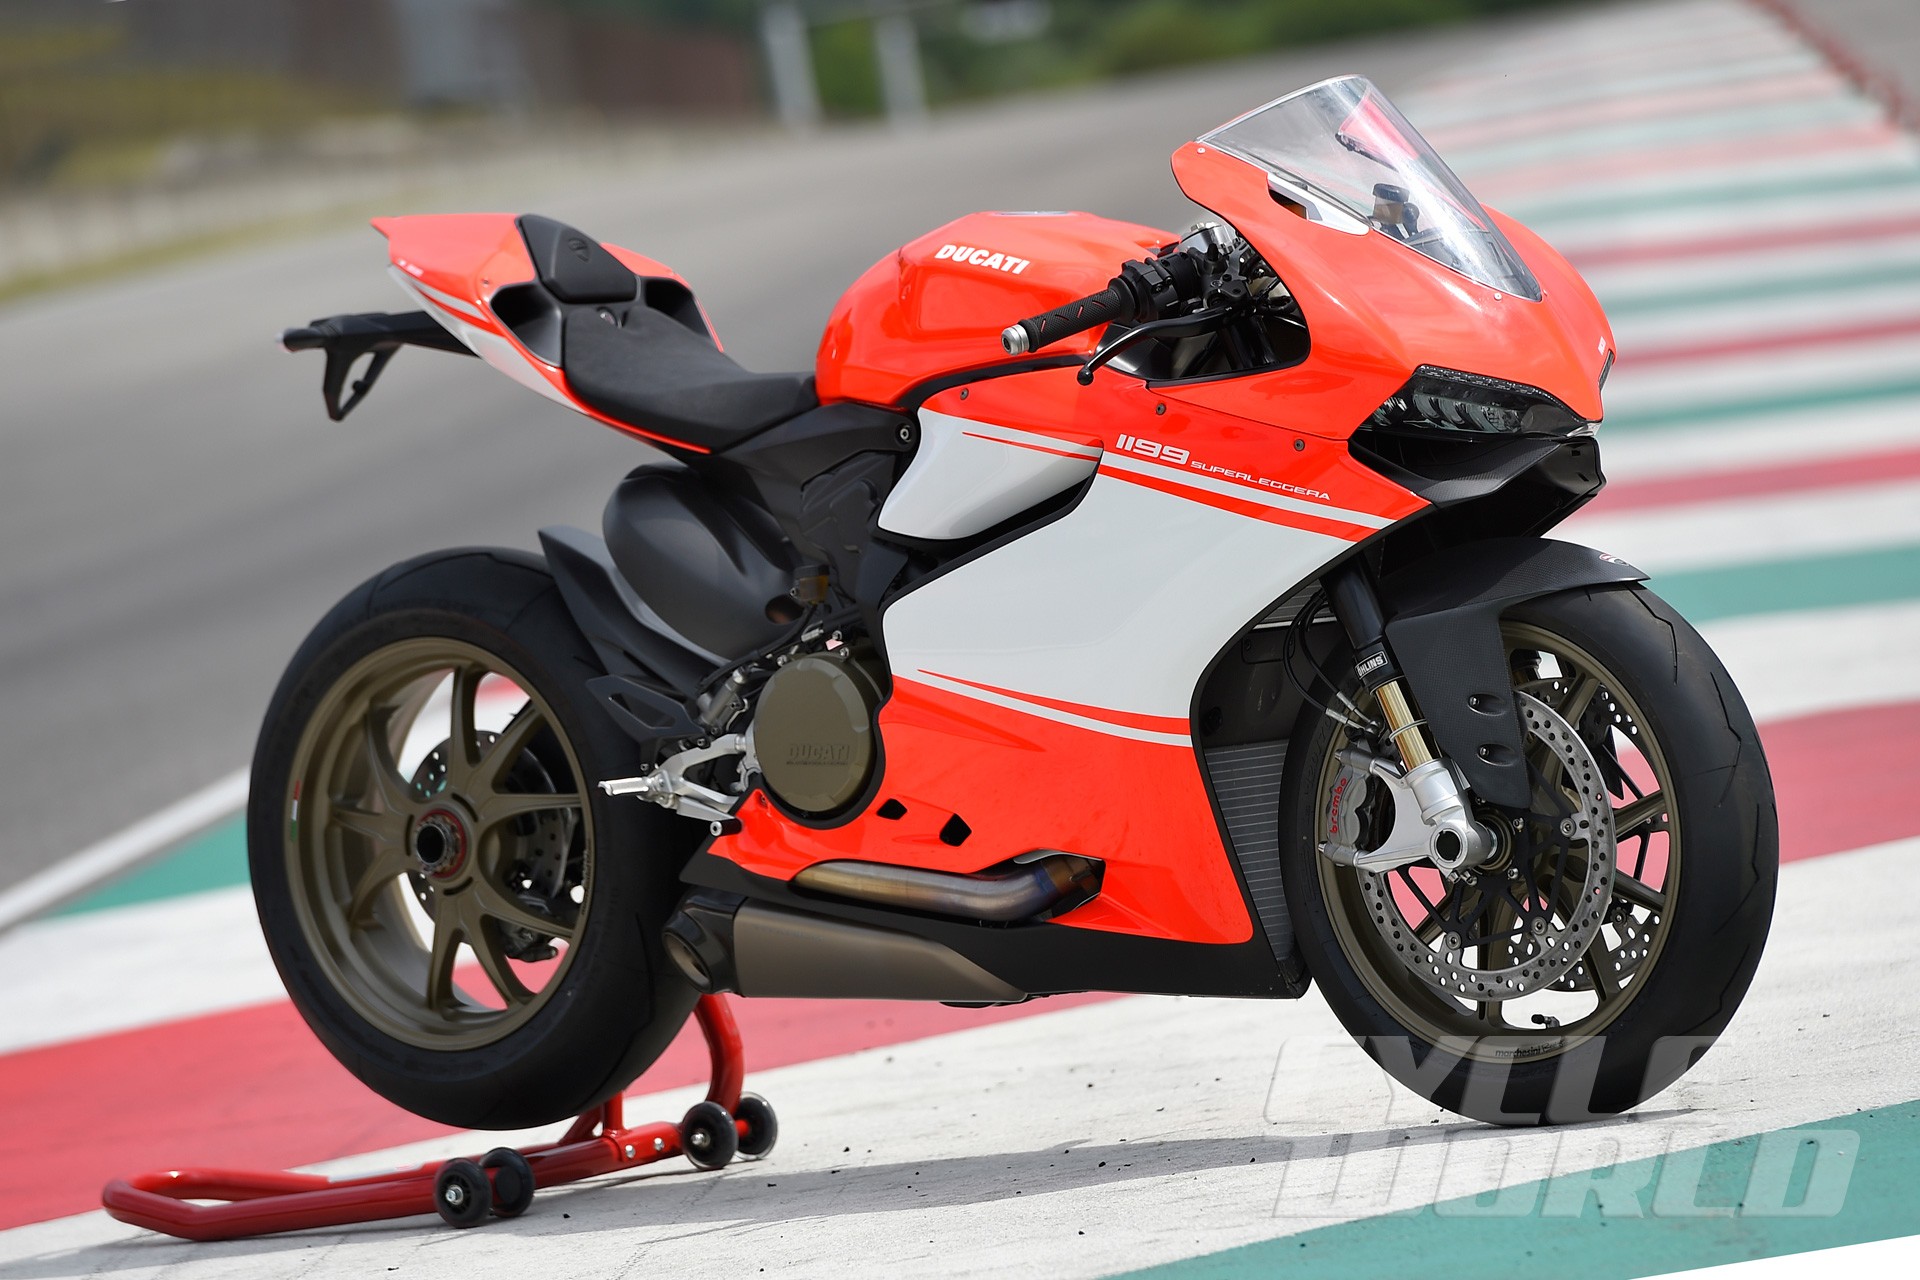 Ducati Ducati 1199 Superleggera Motorcycle 1920x1280